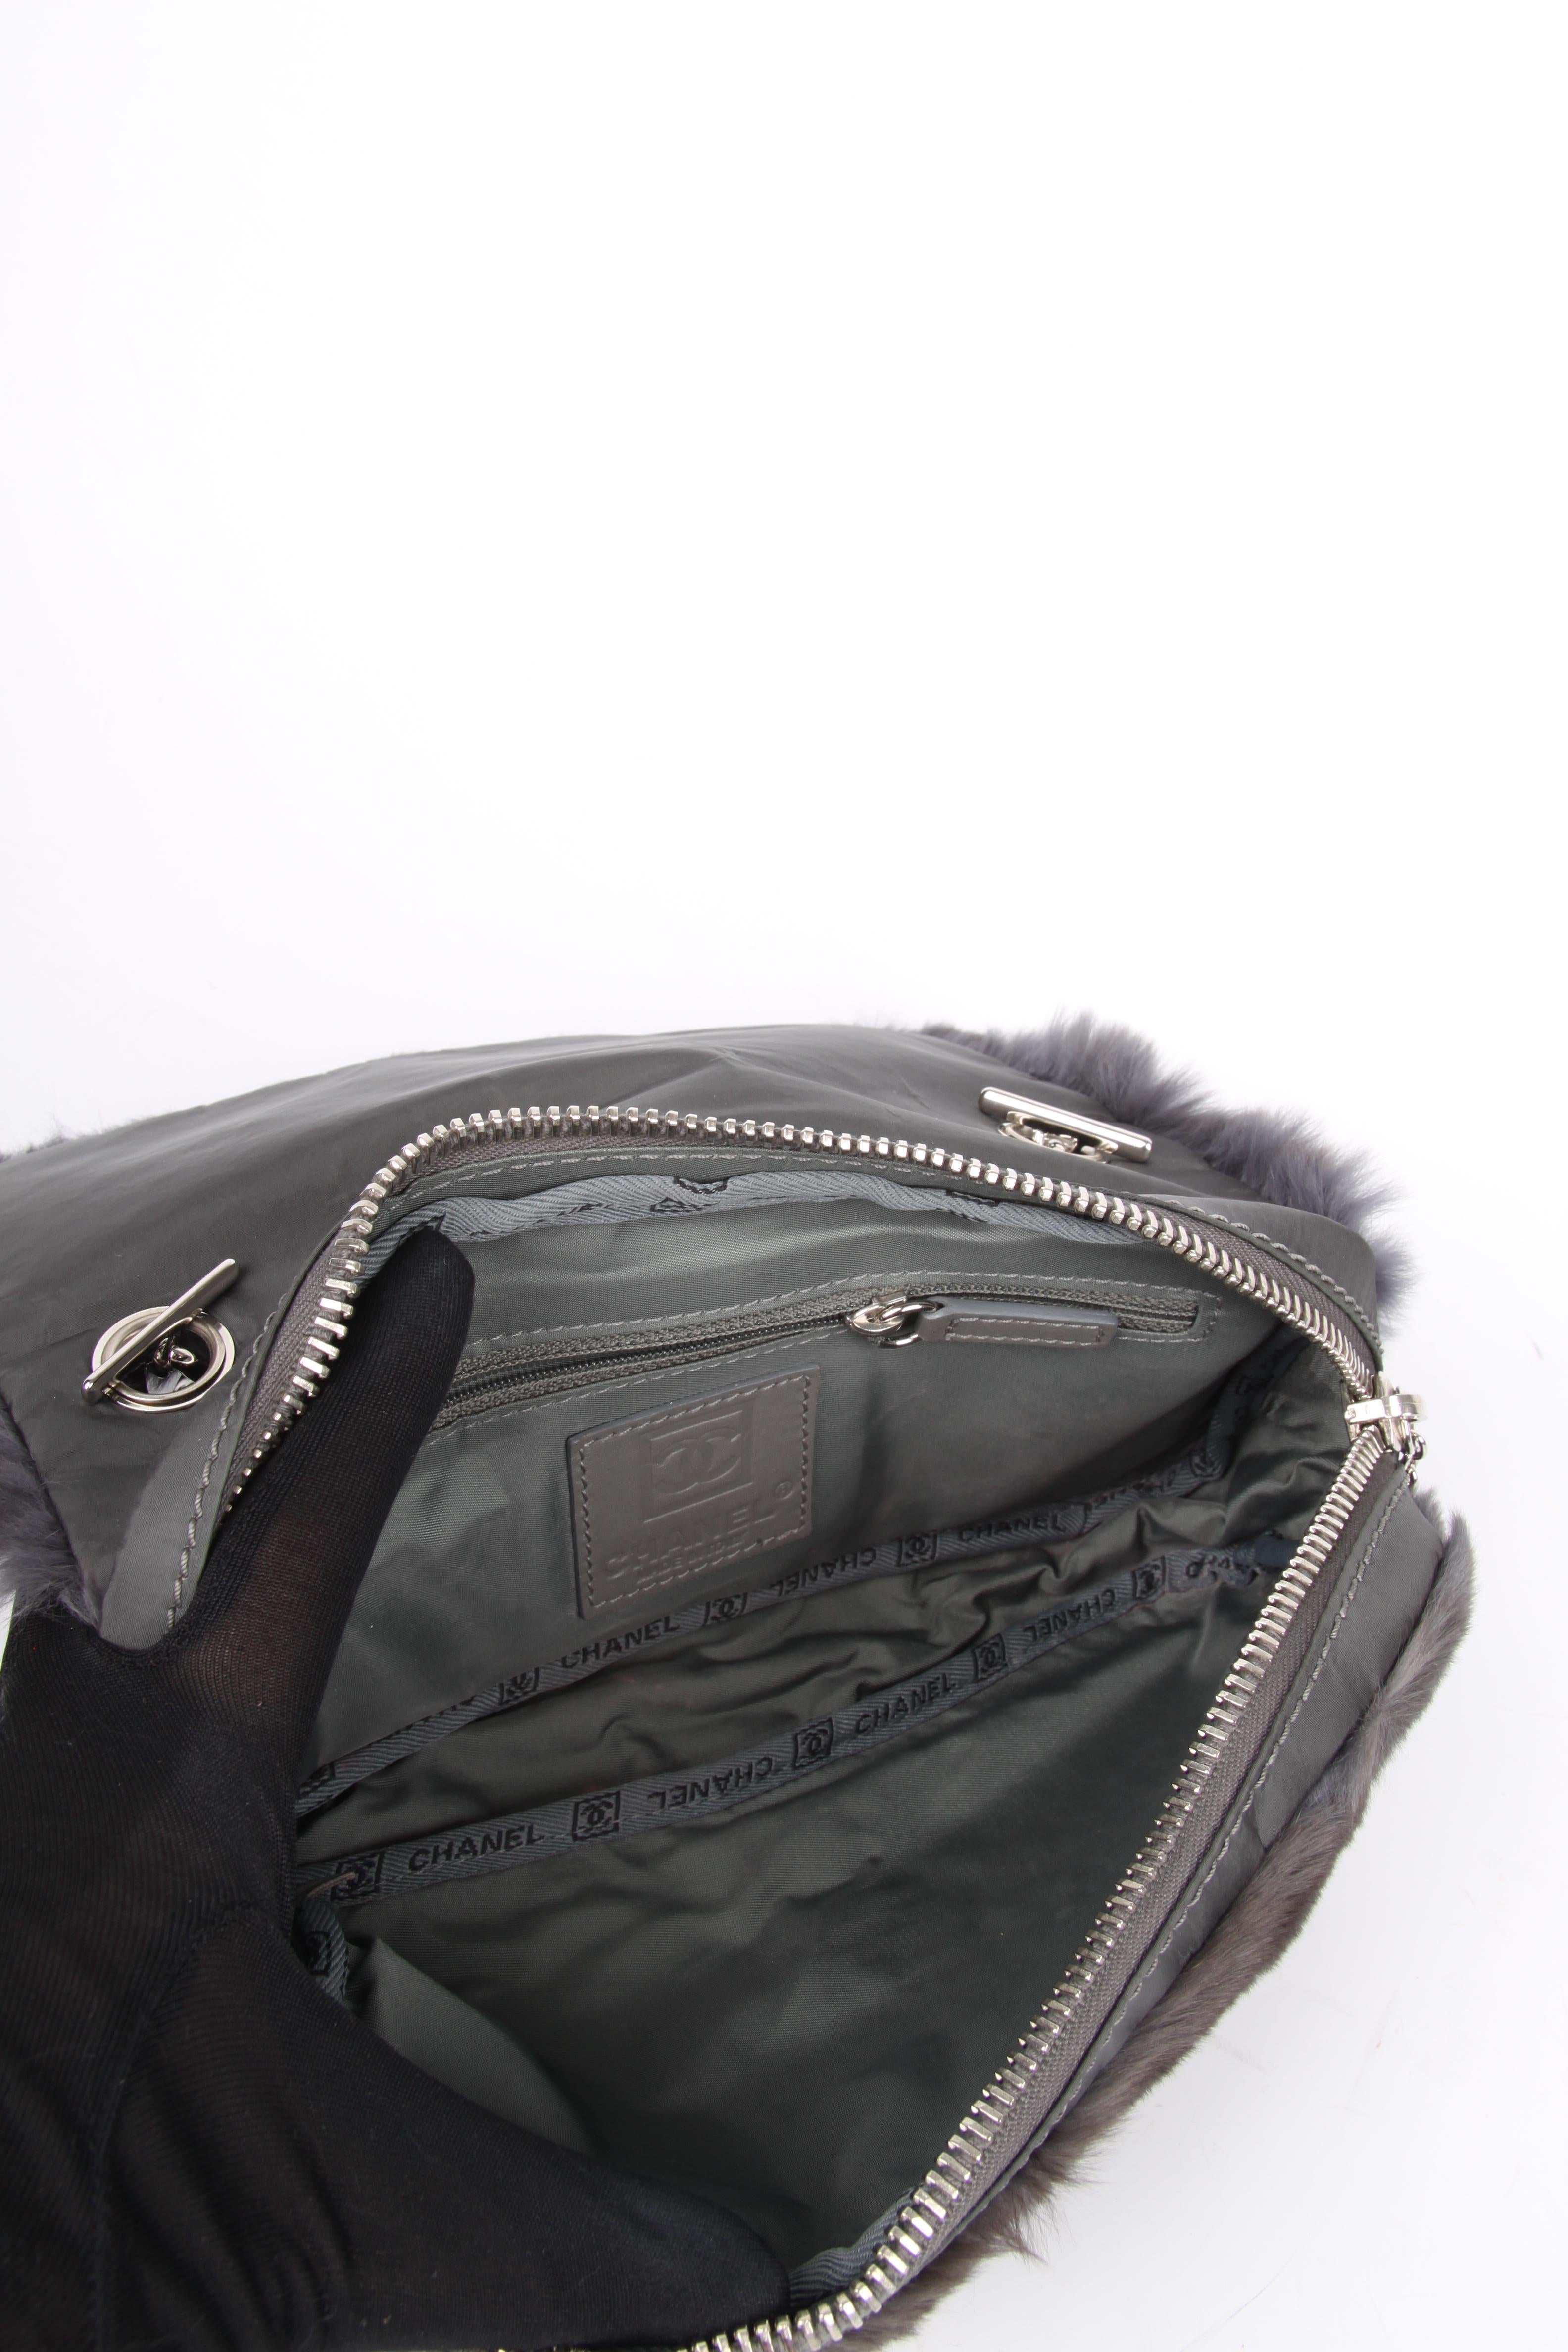 Chanel Classic Bag Feston Stitch - dark grey 2